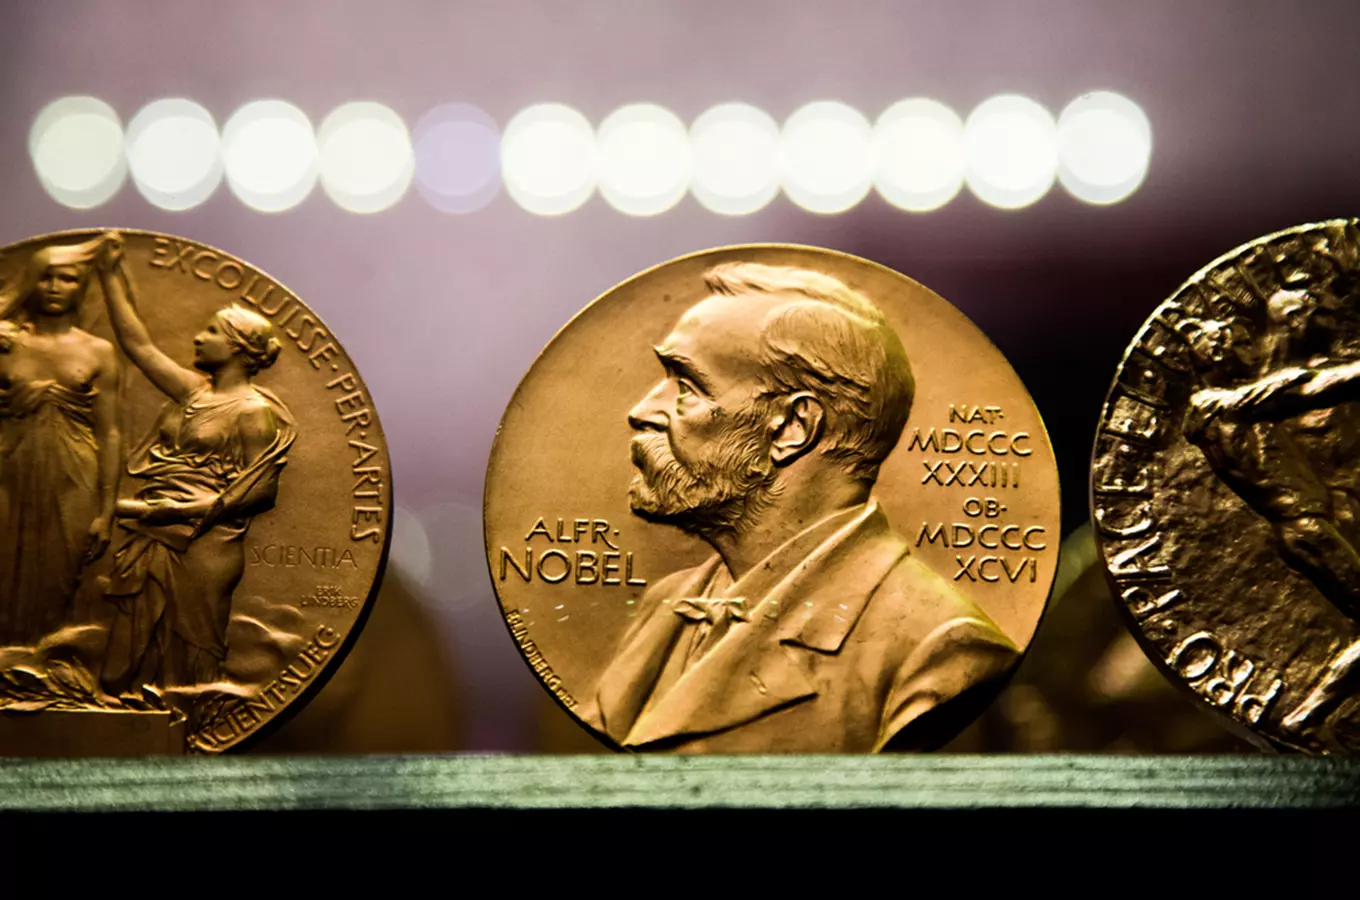 Věda a historie není nuda: Nobelovy ceny pro Česko, kdo je má a kdo je mohl mít?